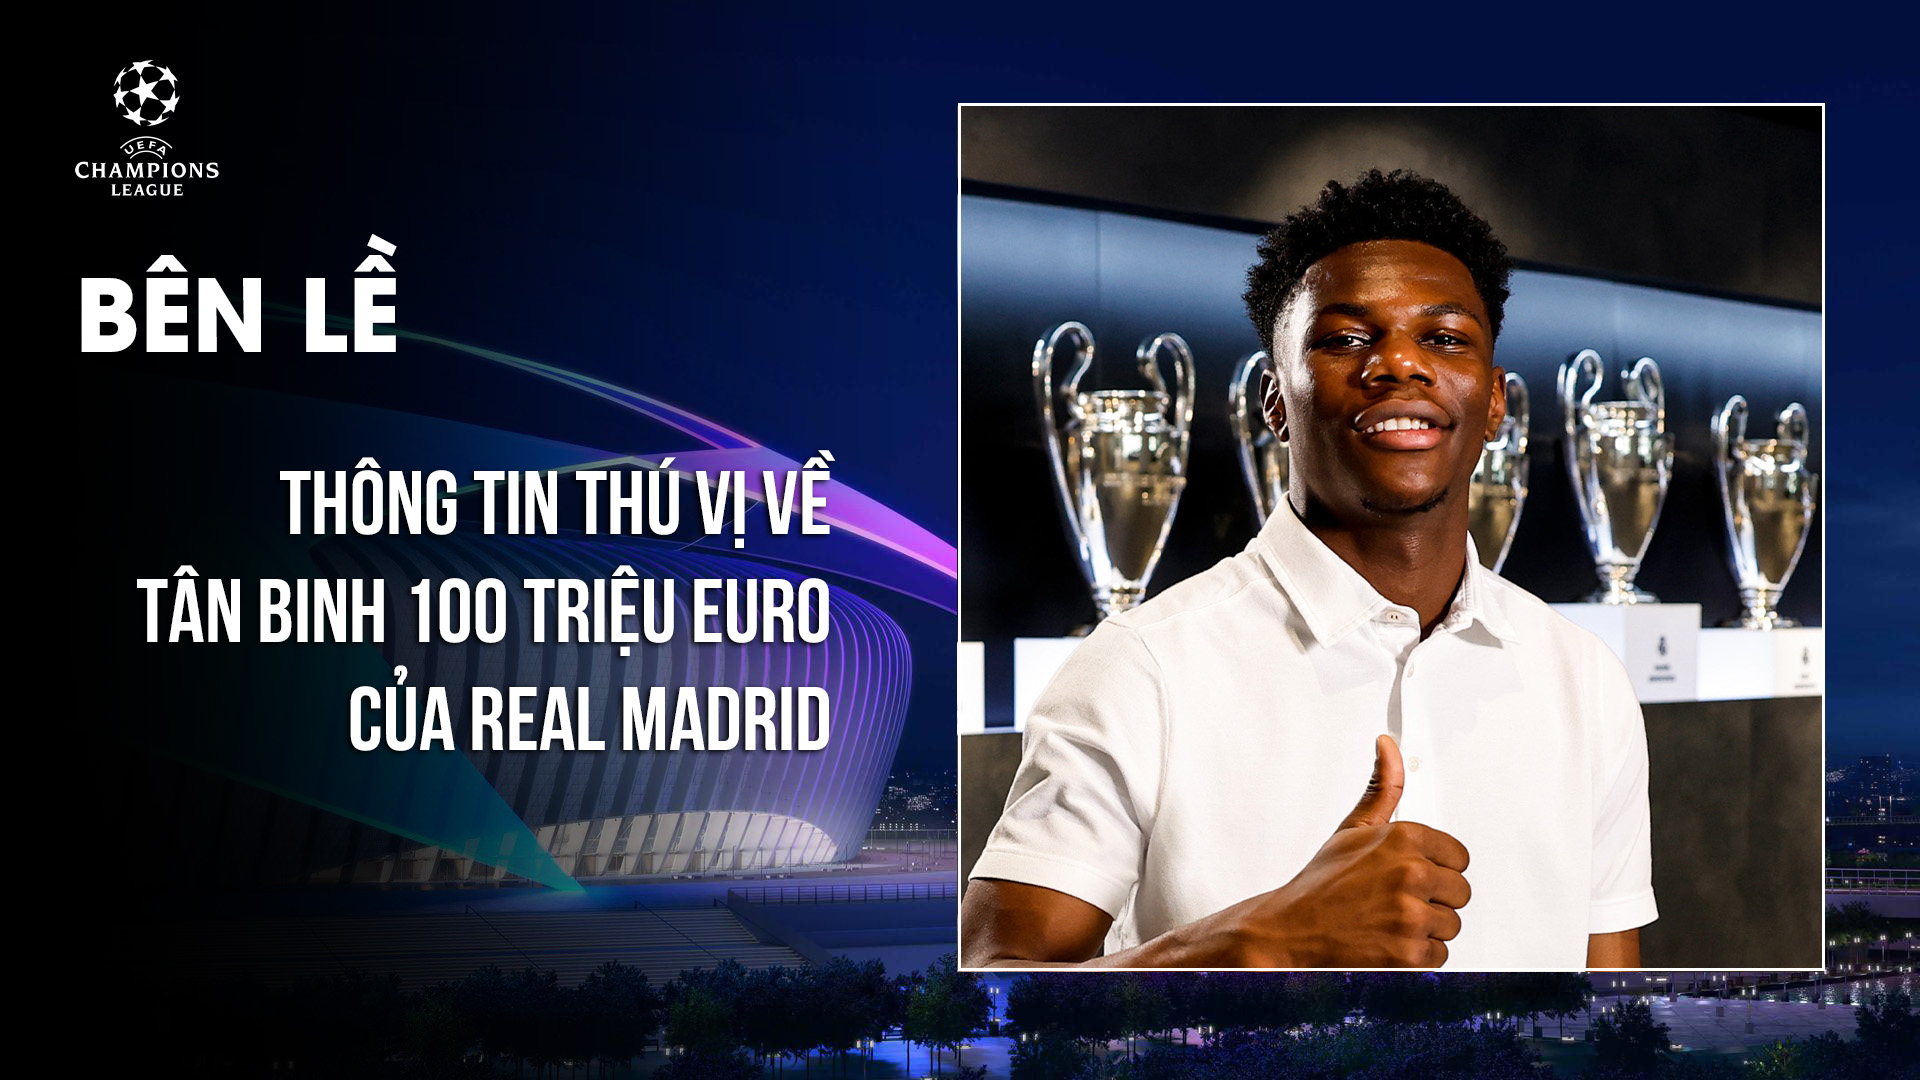 Thông tin thú vị về Tchouameni - tân binh 100 triệu euro của Real Madrid - Câu chuyện thể thao